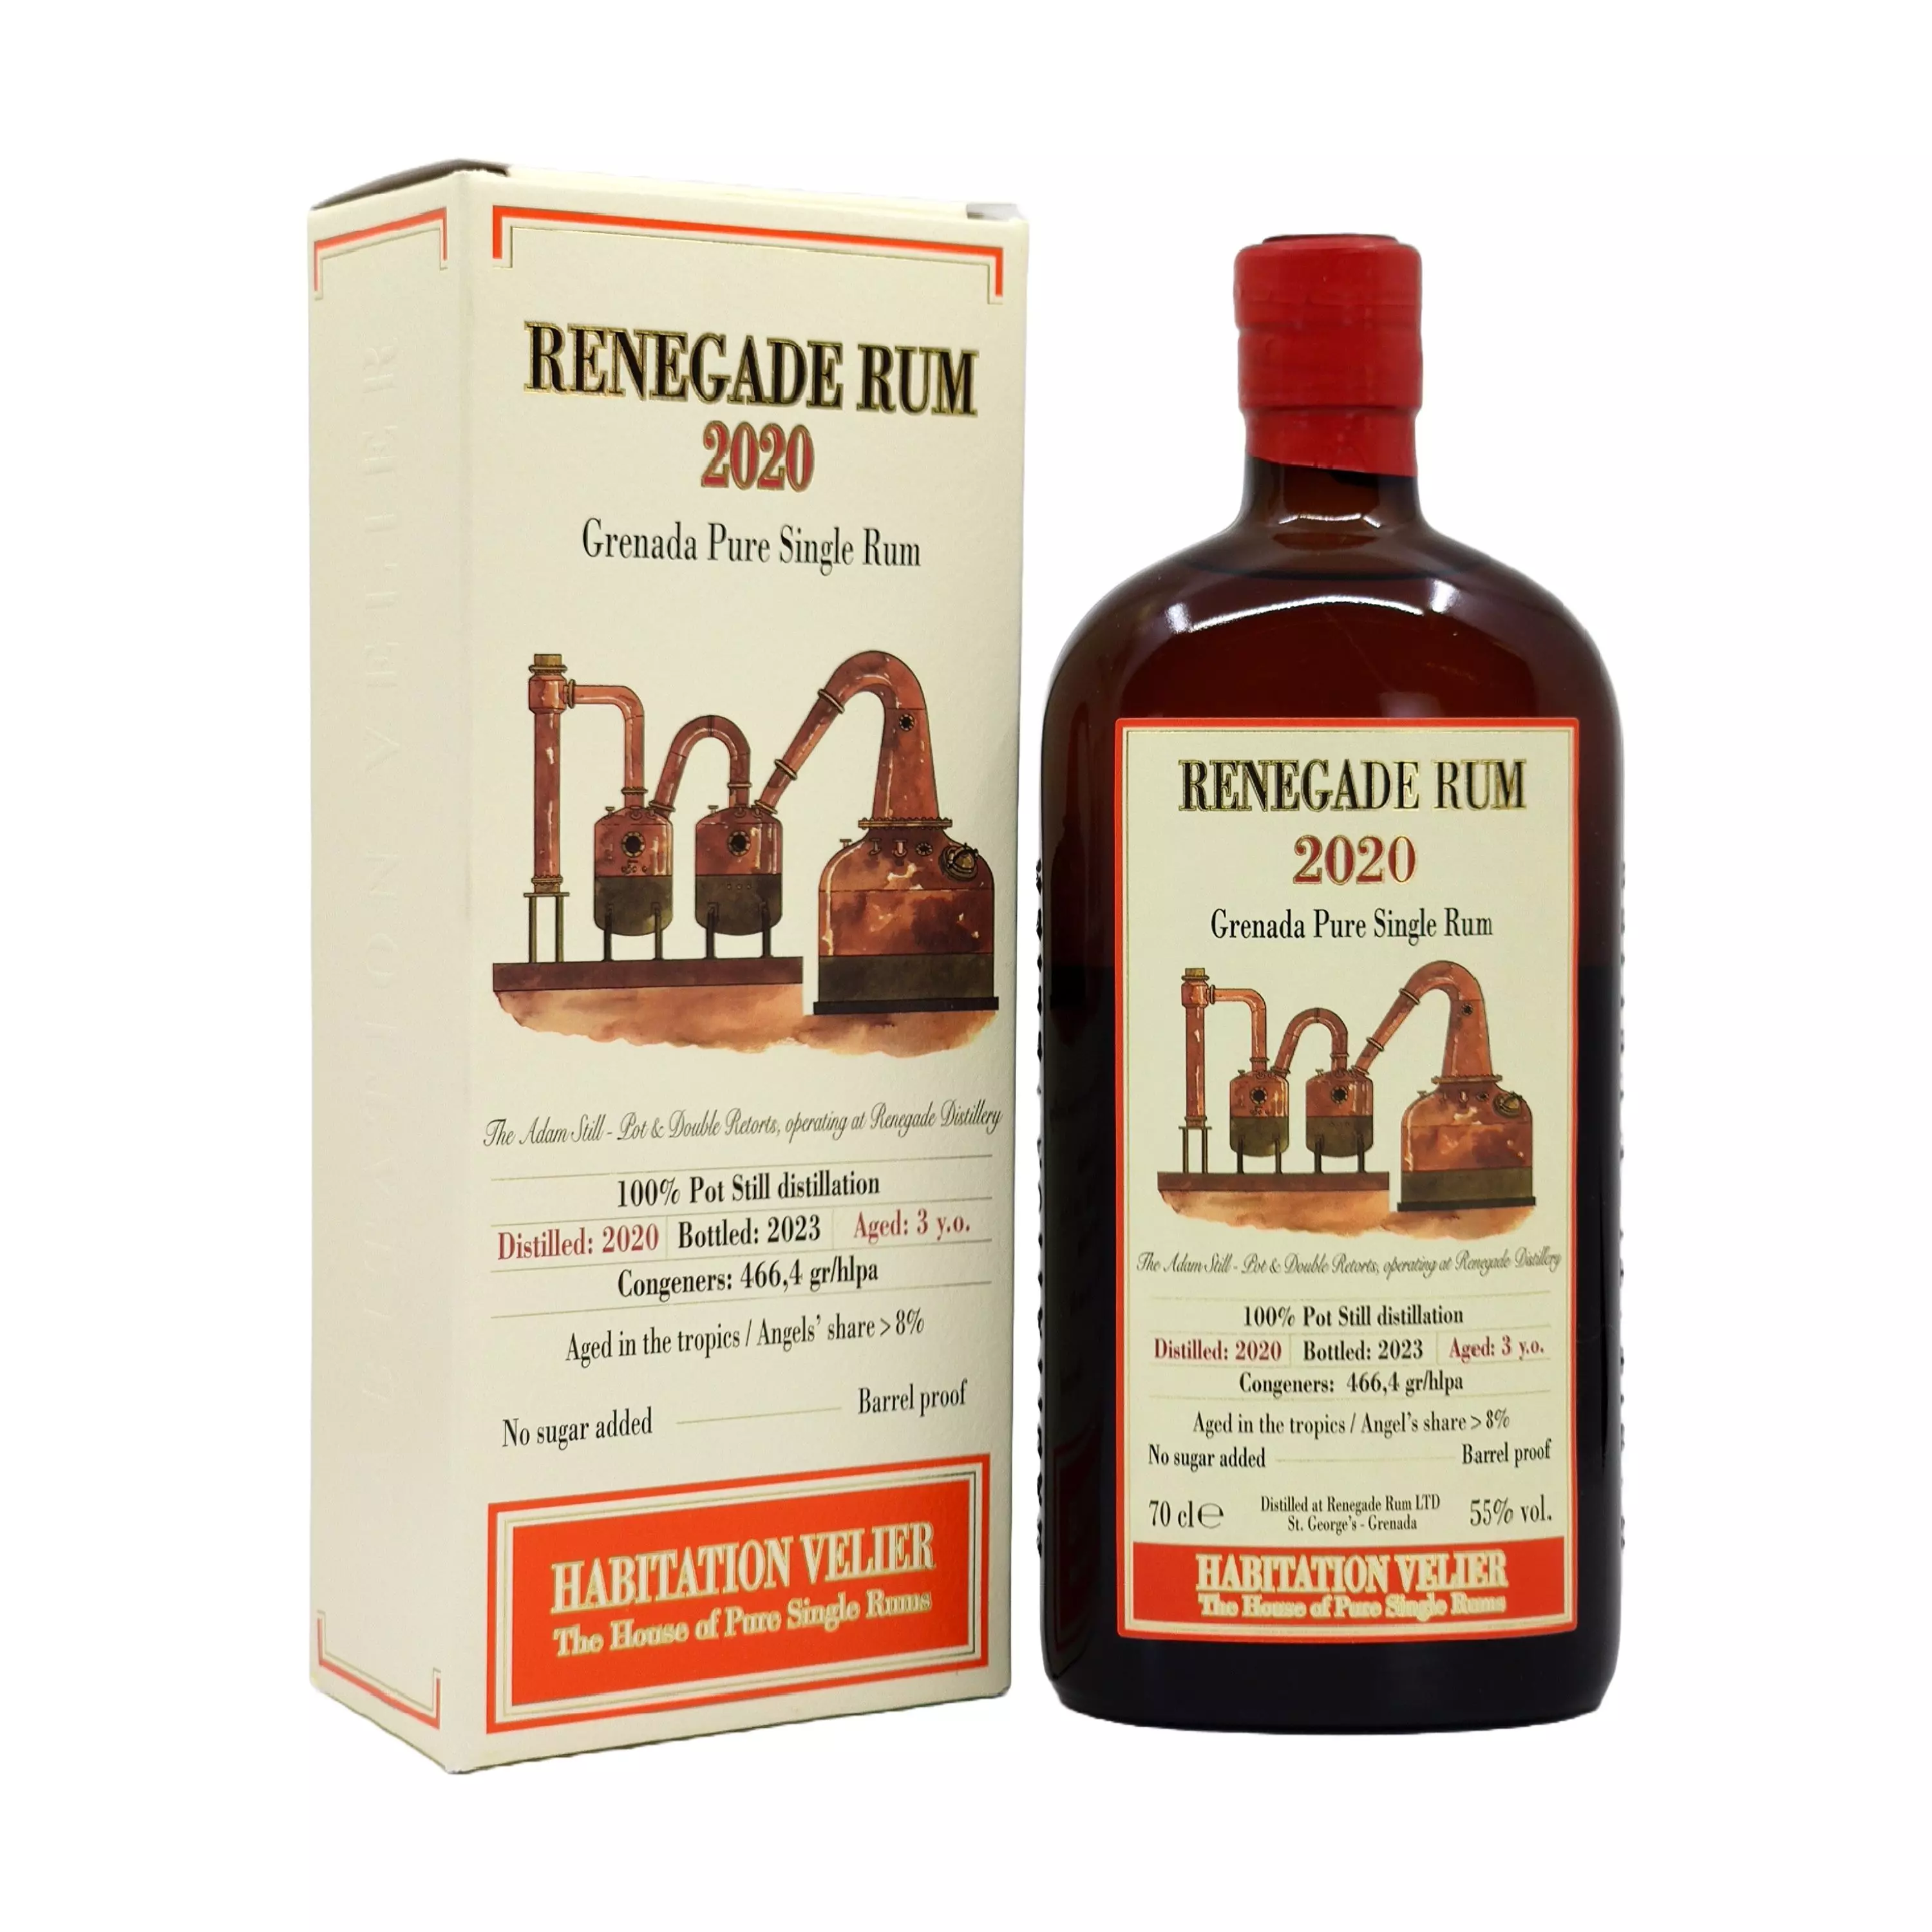 Renegade 3 éves Habitation Velier rum (0,7L / 55%)